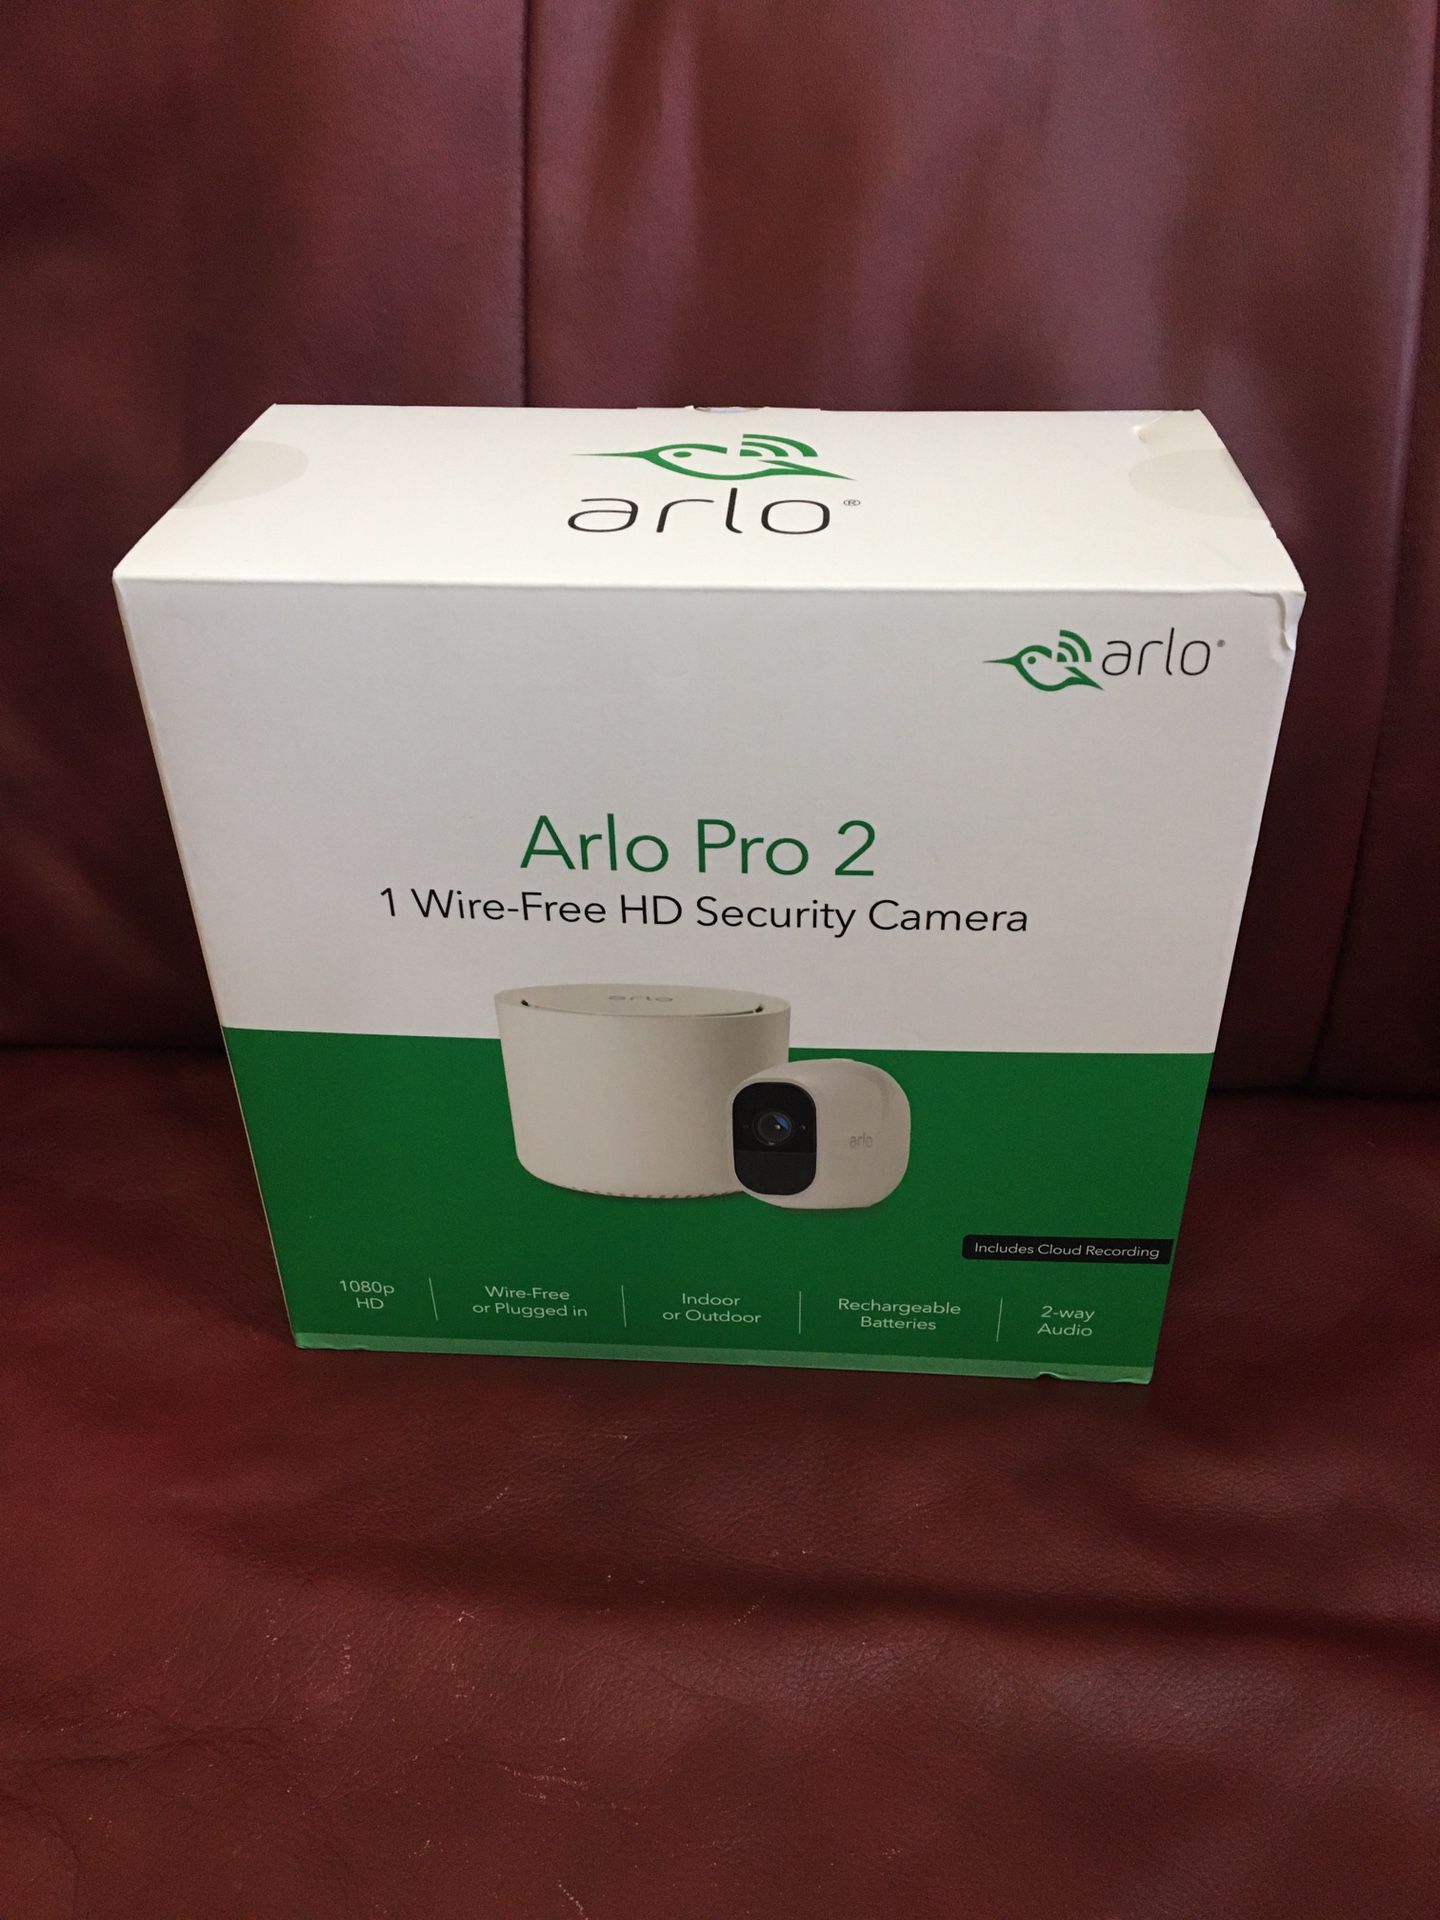 Arlo Pro 2 wireless 1080p Security Camera - vws4120p-100nas